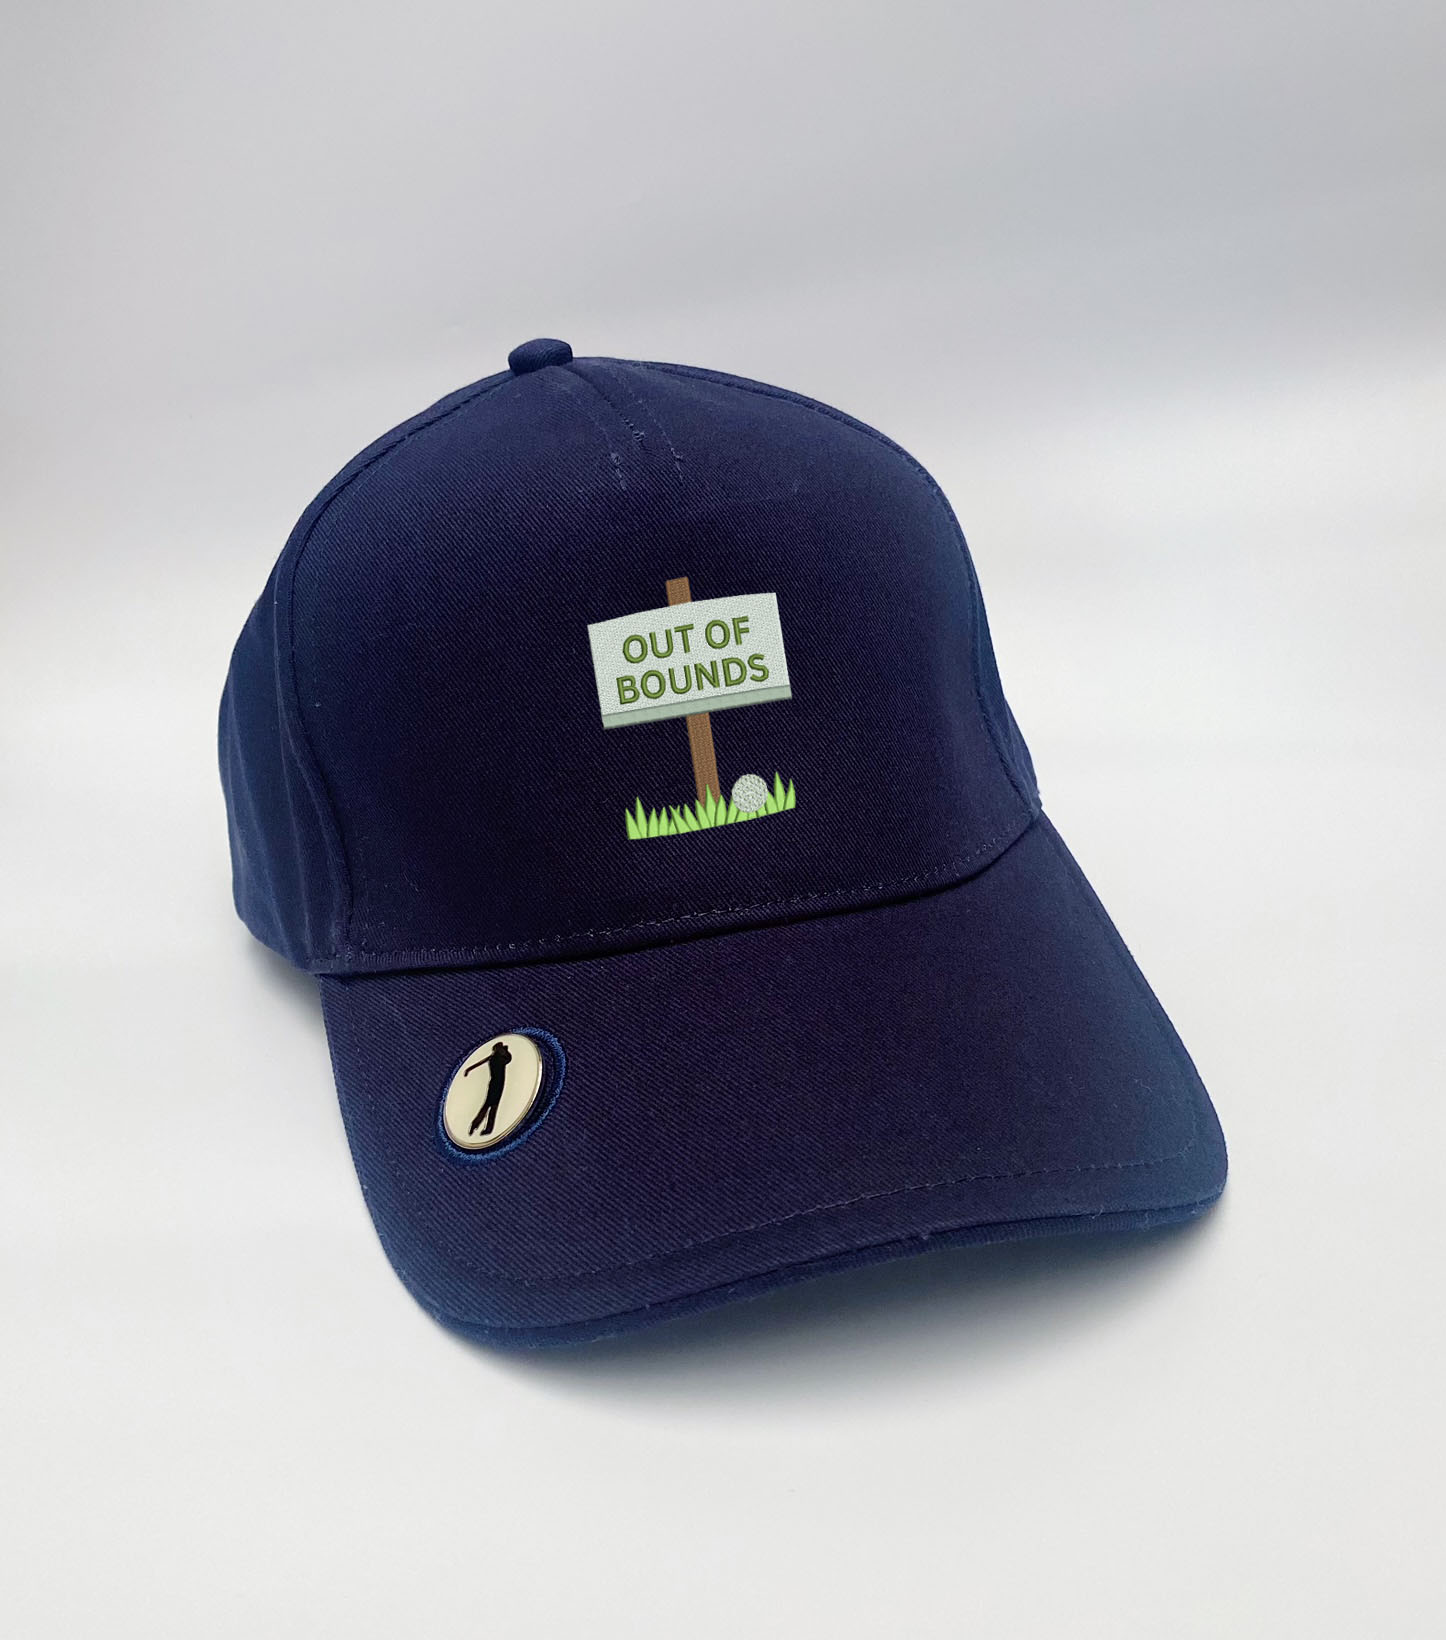 free golf cap